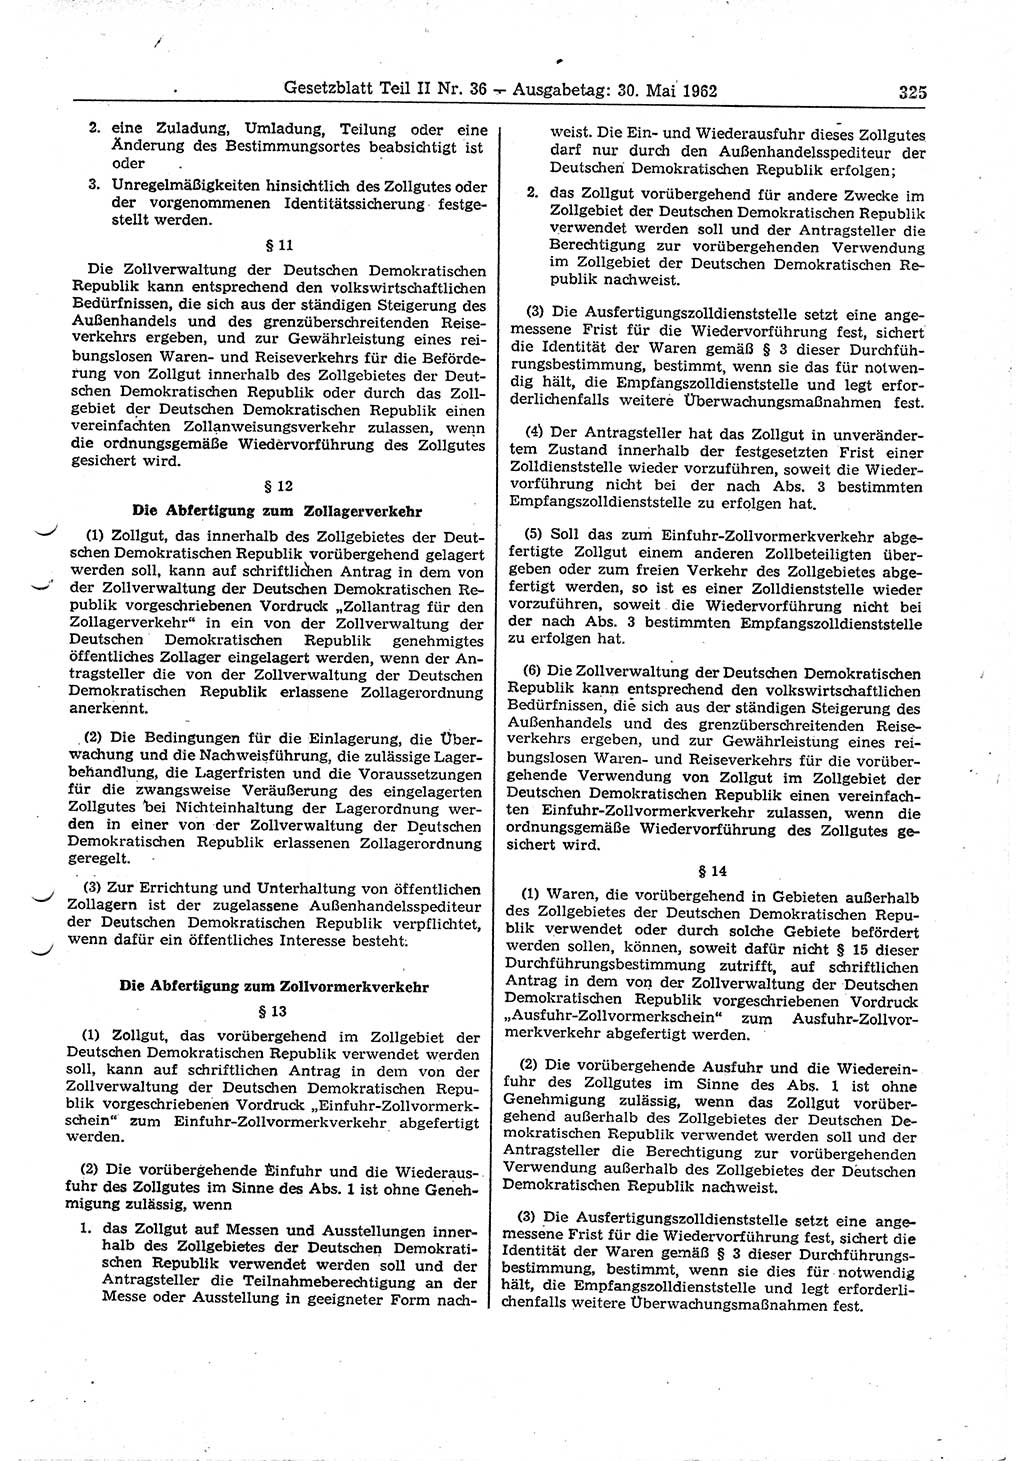 Gesetzblatt (GBl.) der Deutschen Demokratischen Republik (DDR) Teil ⅠⅠ 1962, Seite 325 (GBl. DDR ⅠⅠ 1962, S. 325)